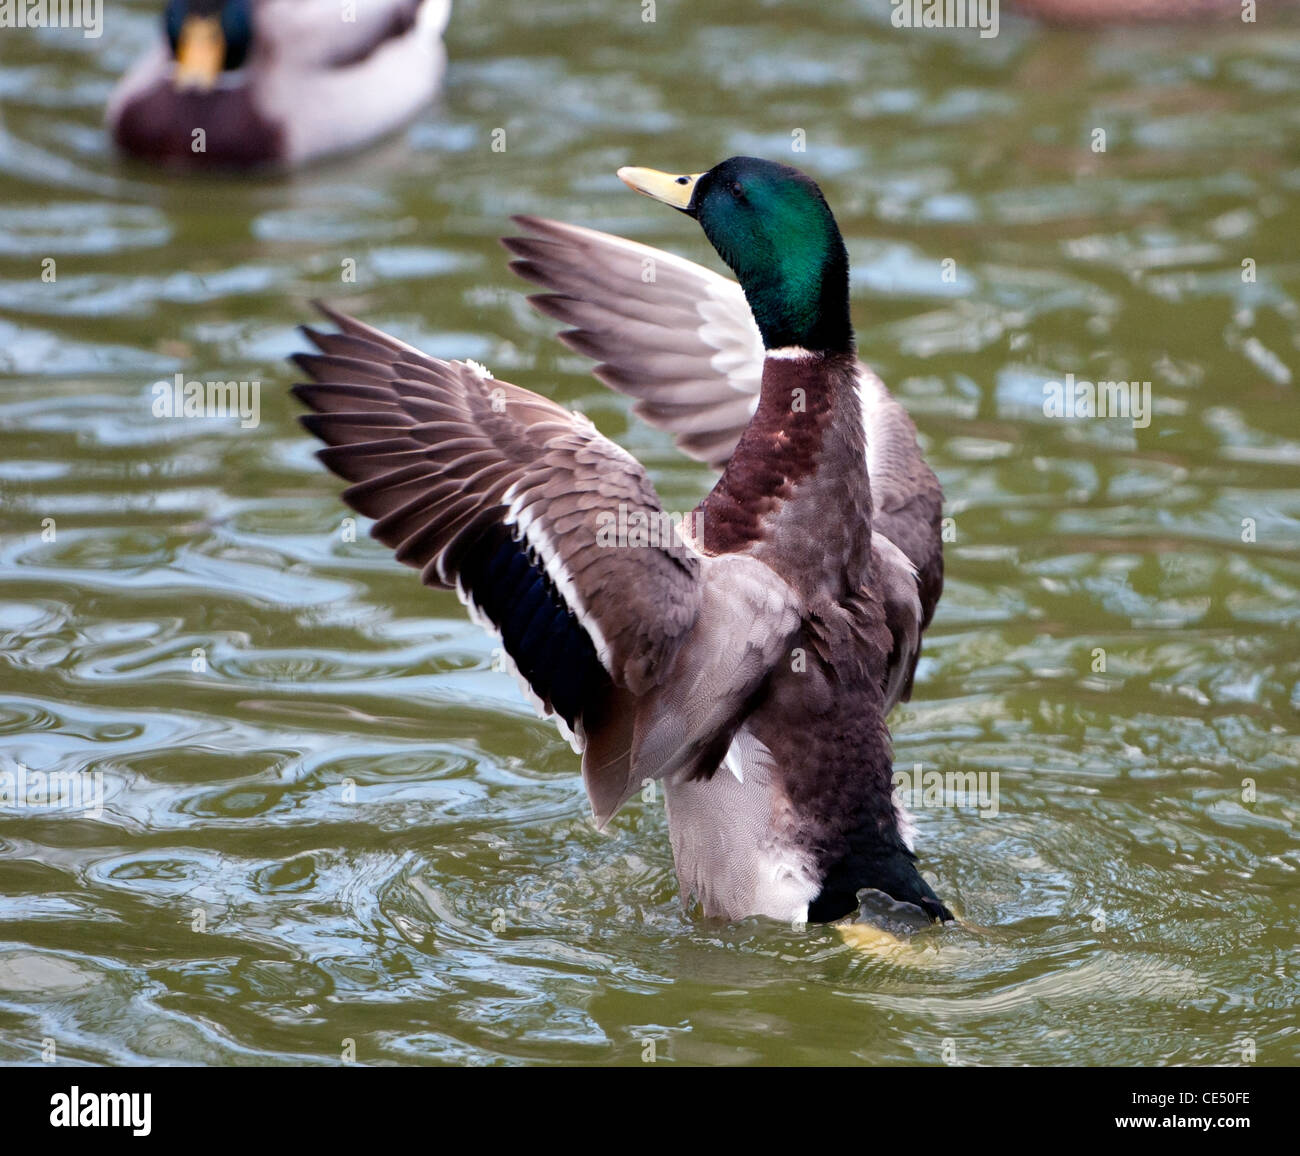 Mallard duck flapping its wings Stock Photo